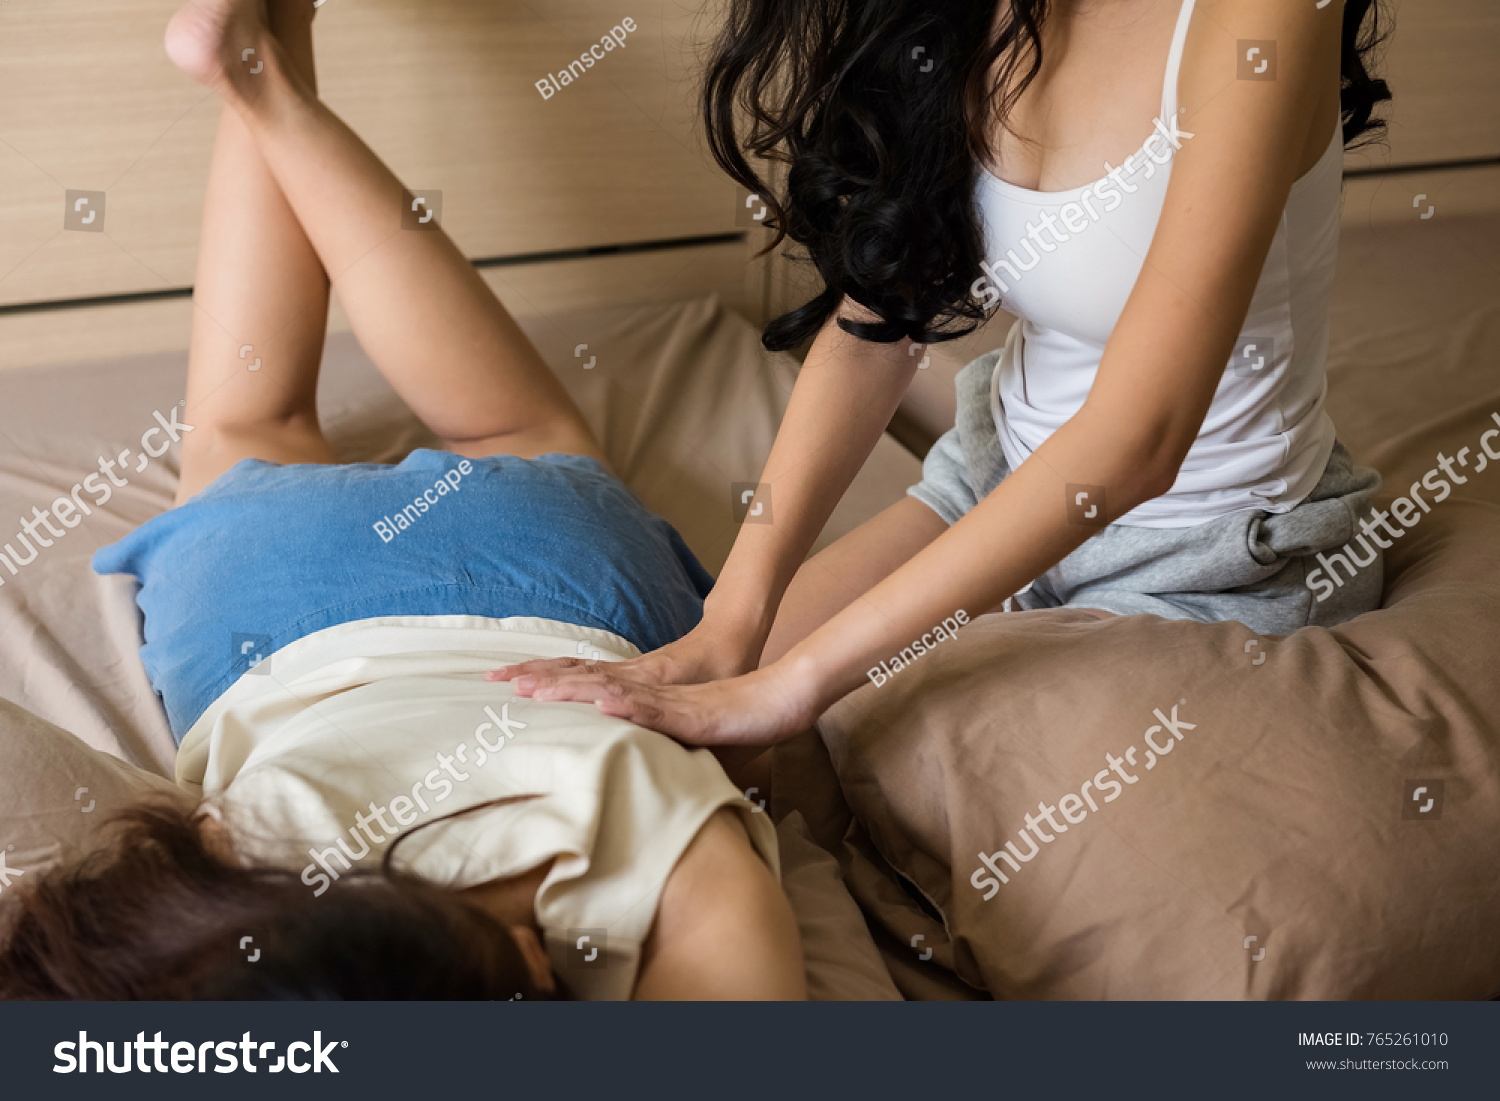 her first lesbian massage sex gallerie